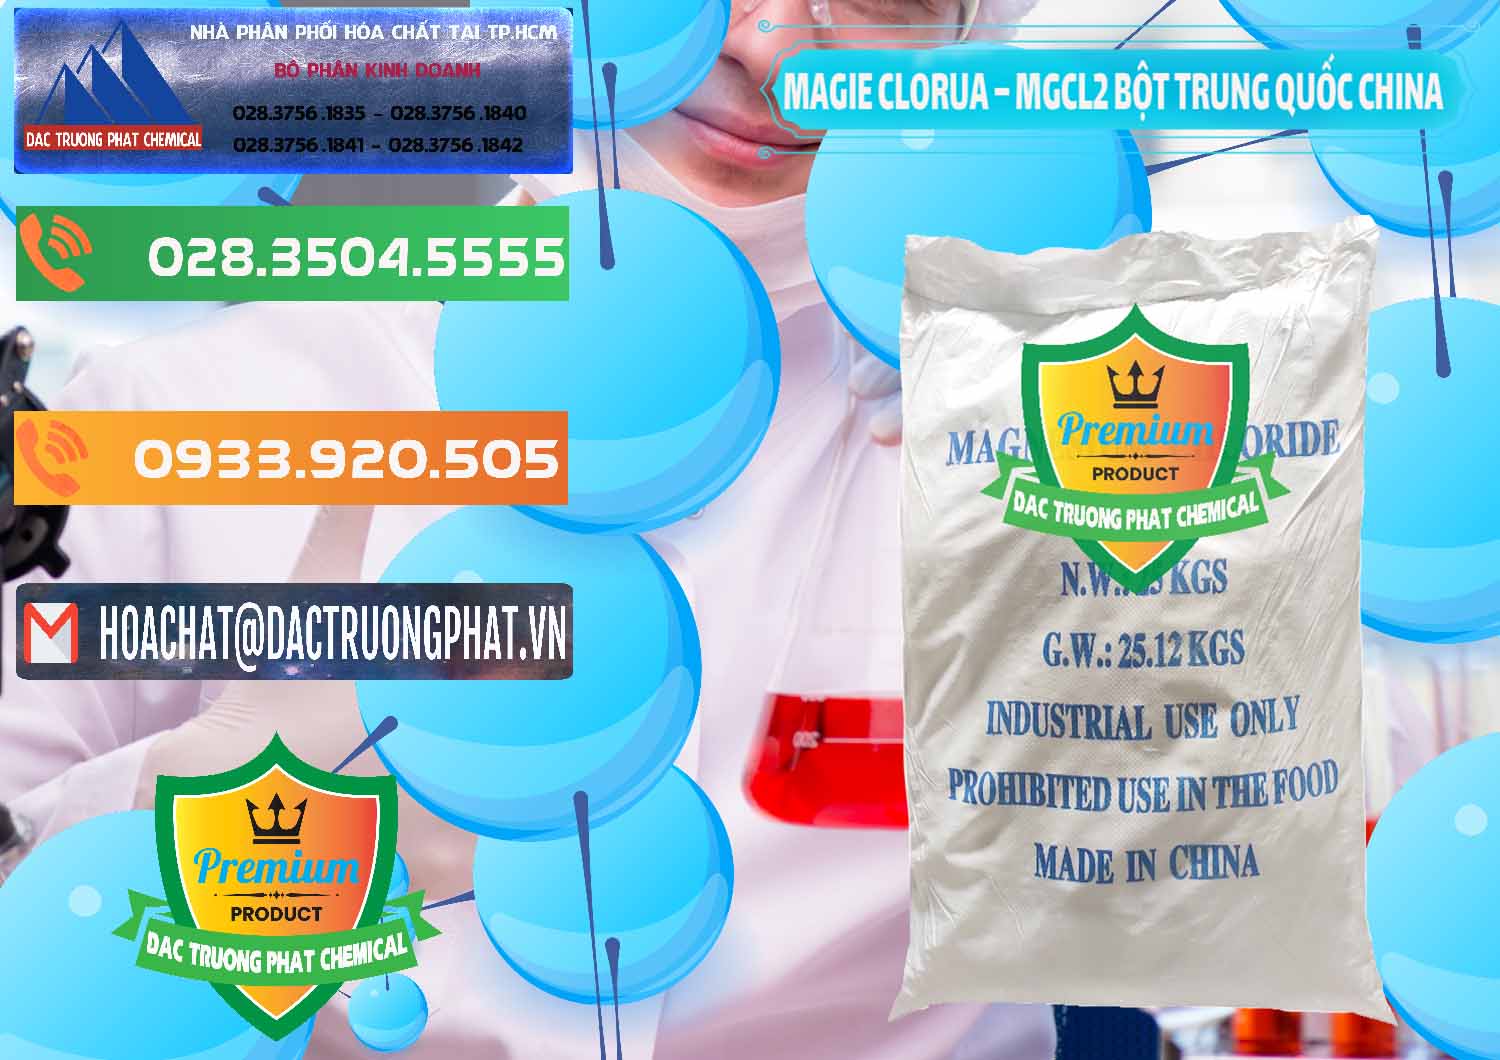 Cty cung cấp và bán Magie Clorua – MGCL2 96% Dạng Bột Bao Chữ Xanh Trung Quốc China - 0207 - Công ty chuyên phân phối _ nhập khẩu hóa chất tại TP.HCM - hoachatxulynuoc.com.vn